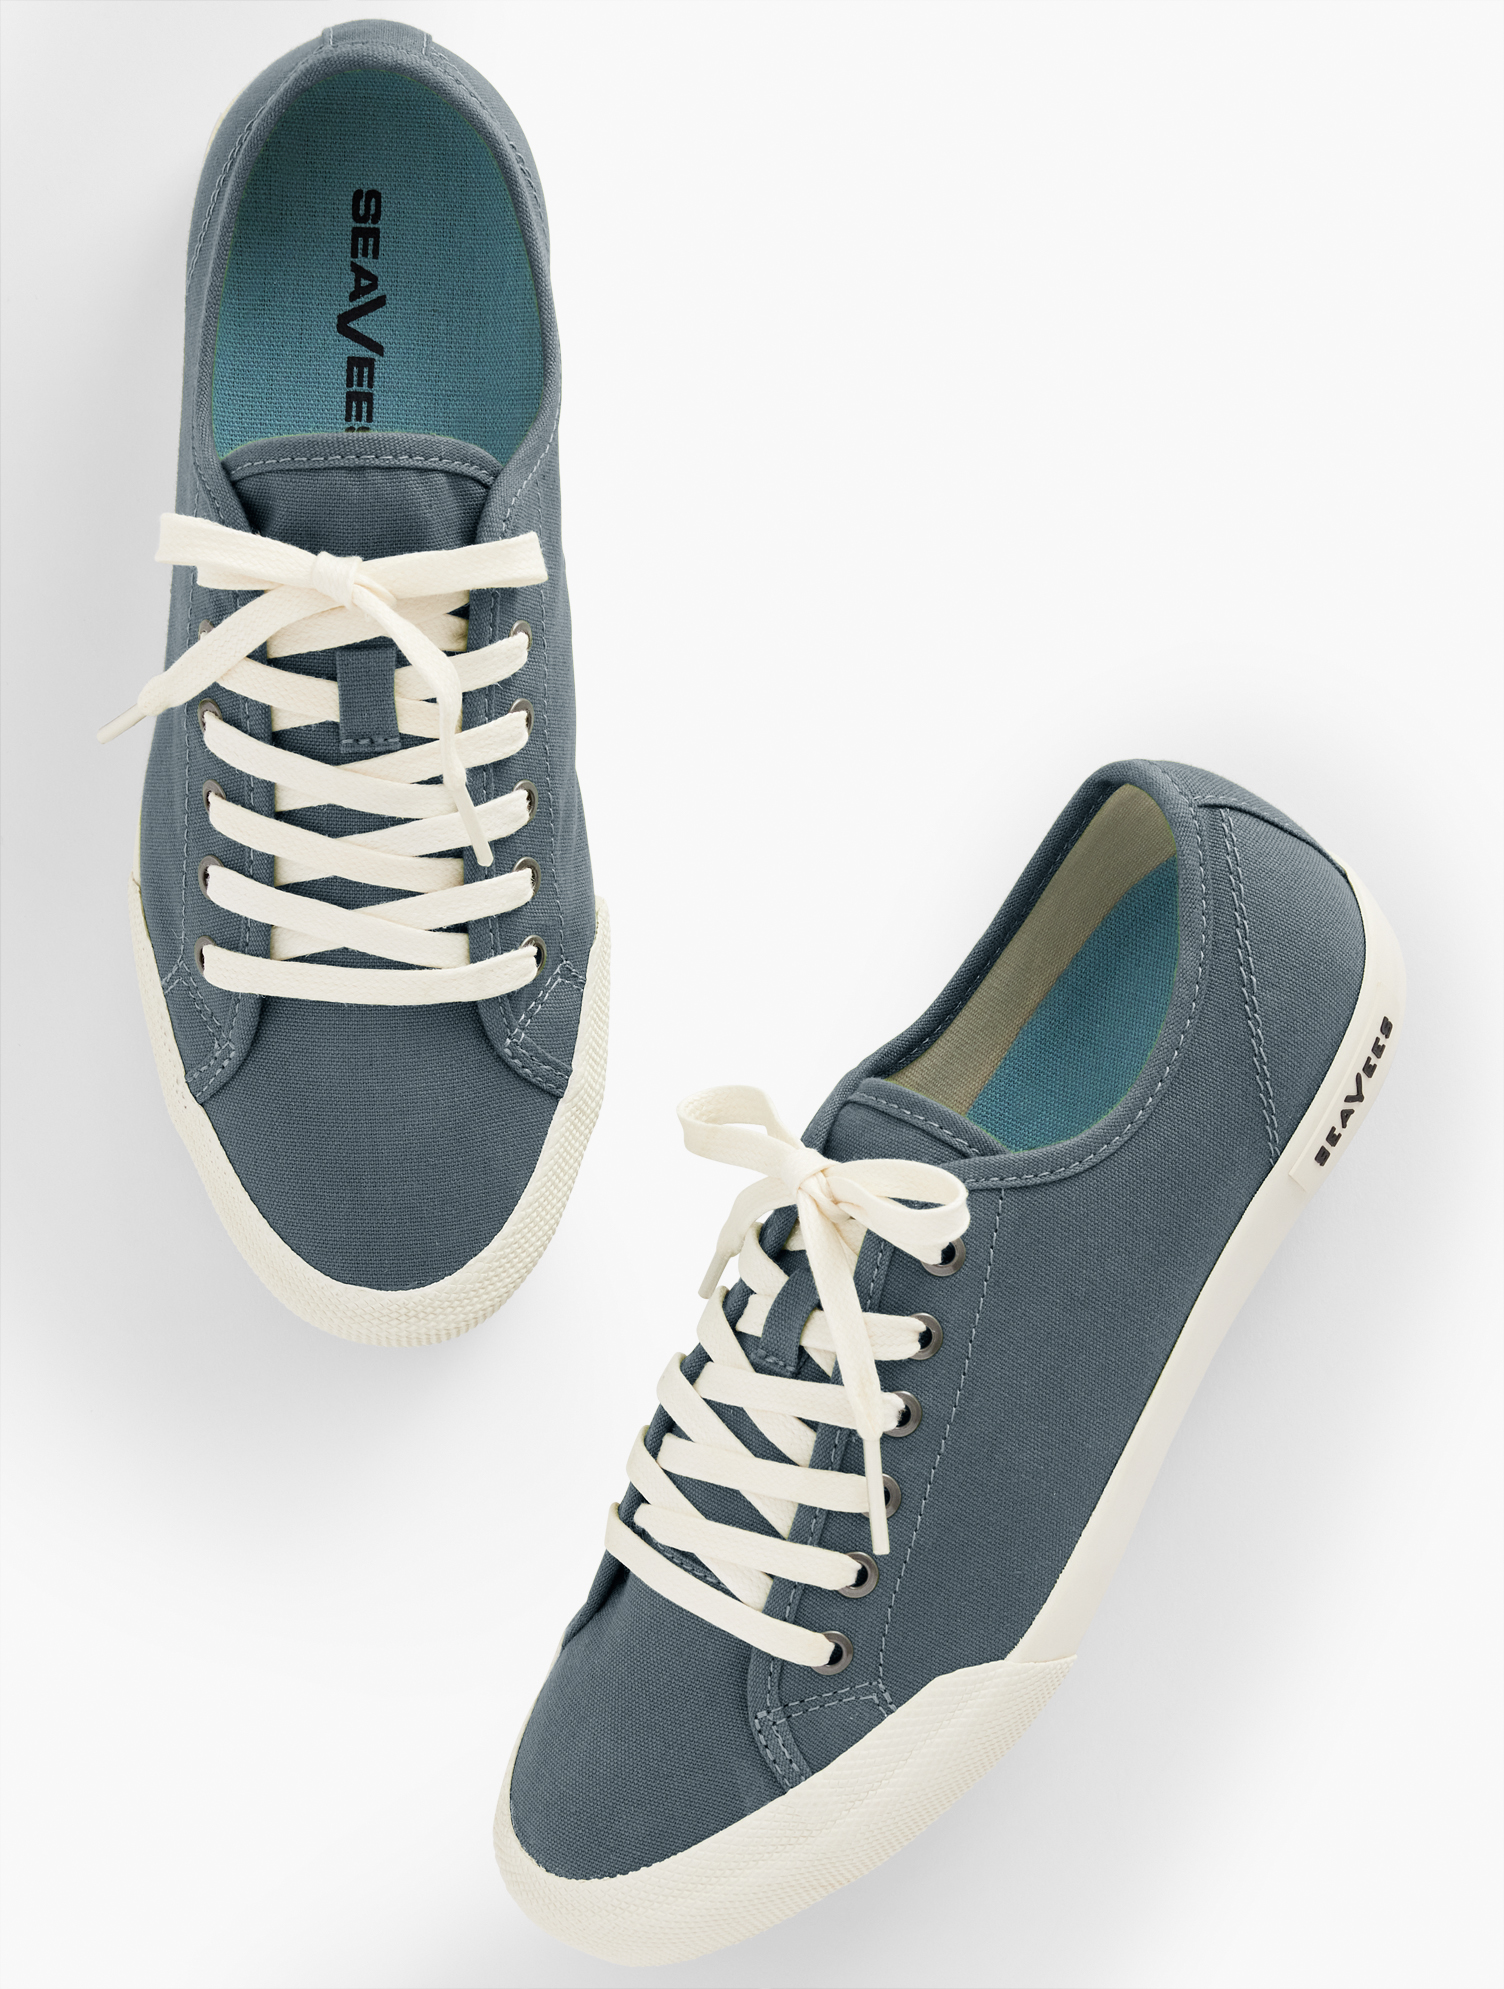 Talbots Seaveesâ¢ Monterey Classic Canvas Sneakers - Slate Navy Blue - 11m